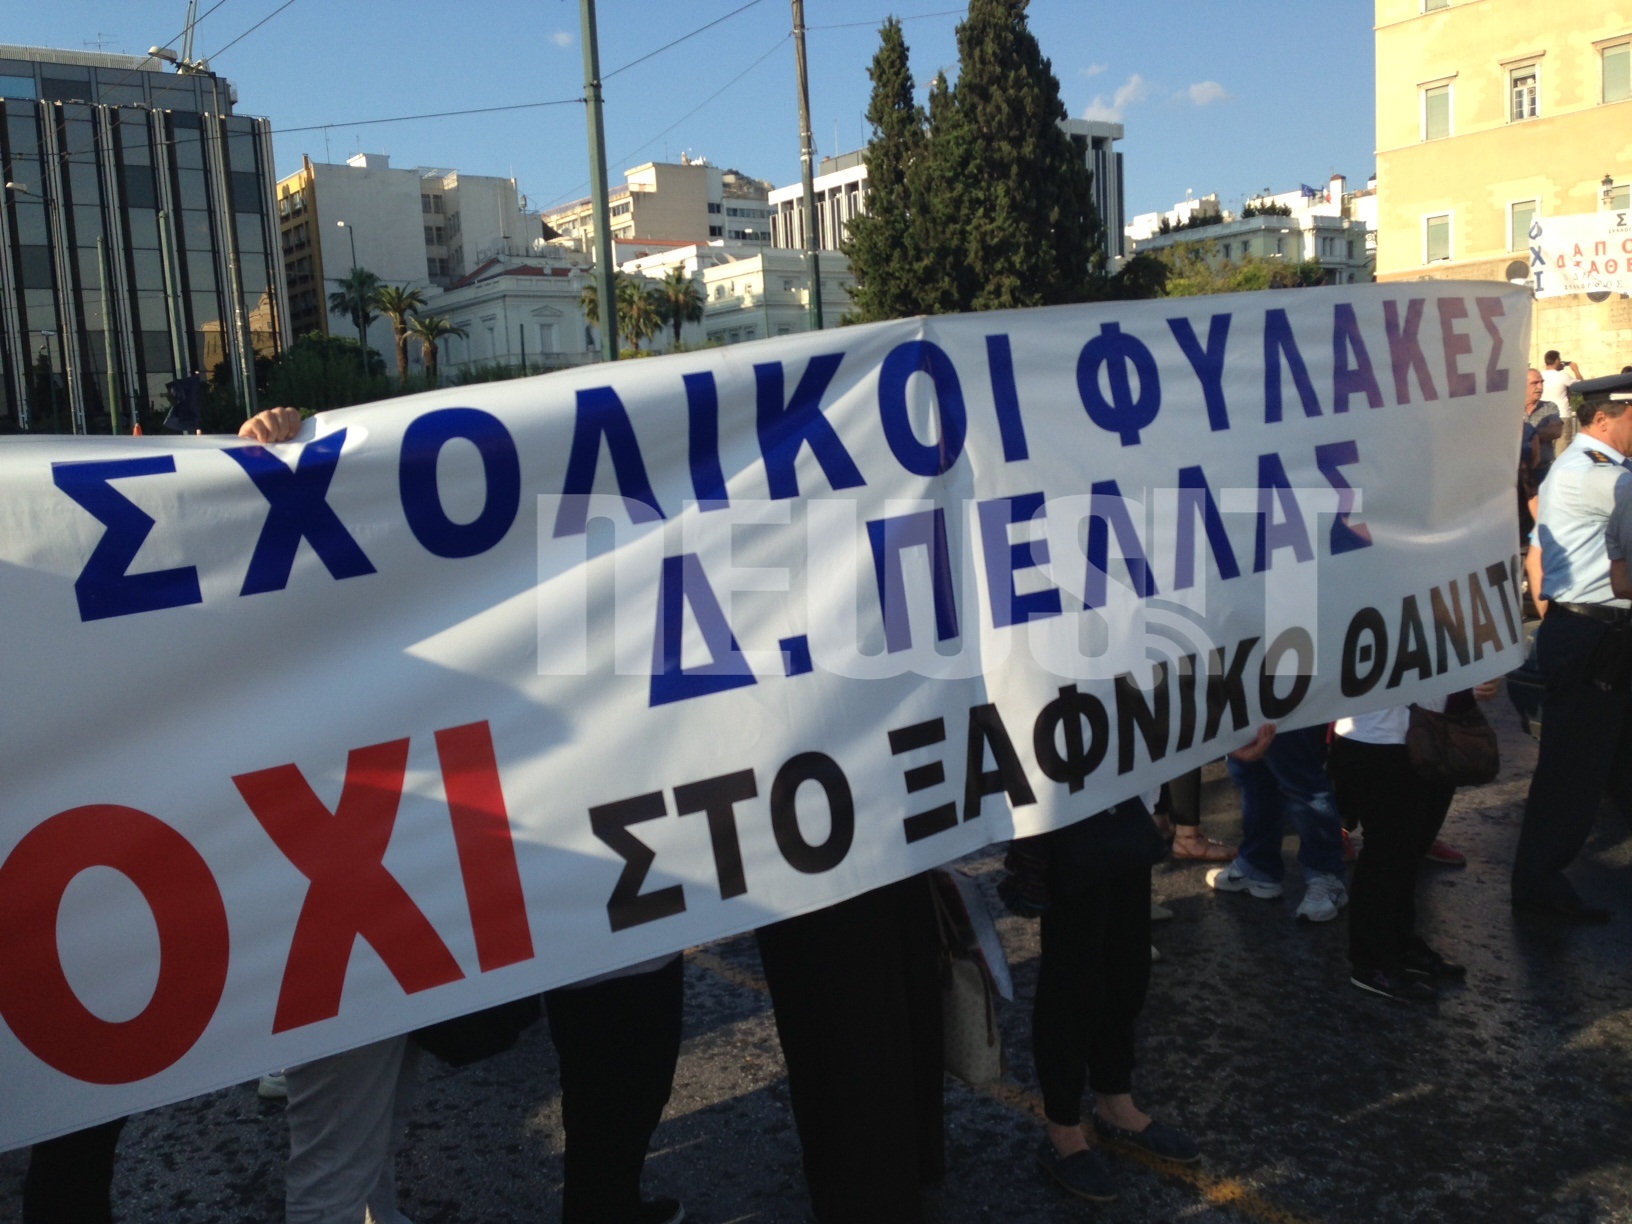 Δημοτικοί υπάλληλοι από όλη την Ελλάδα είναι στο Σύνταγμα ΦΩΤΟ NEWSIT